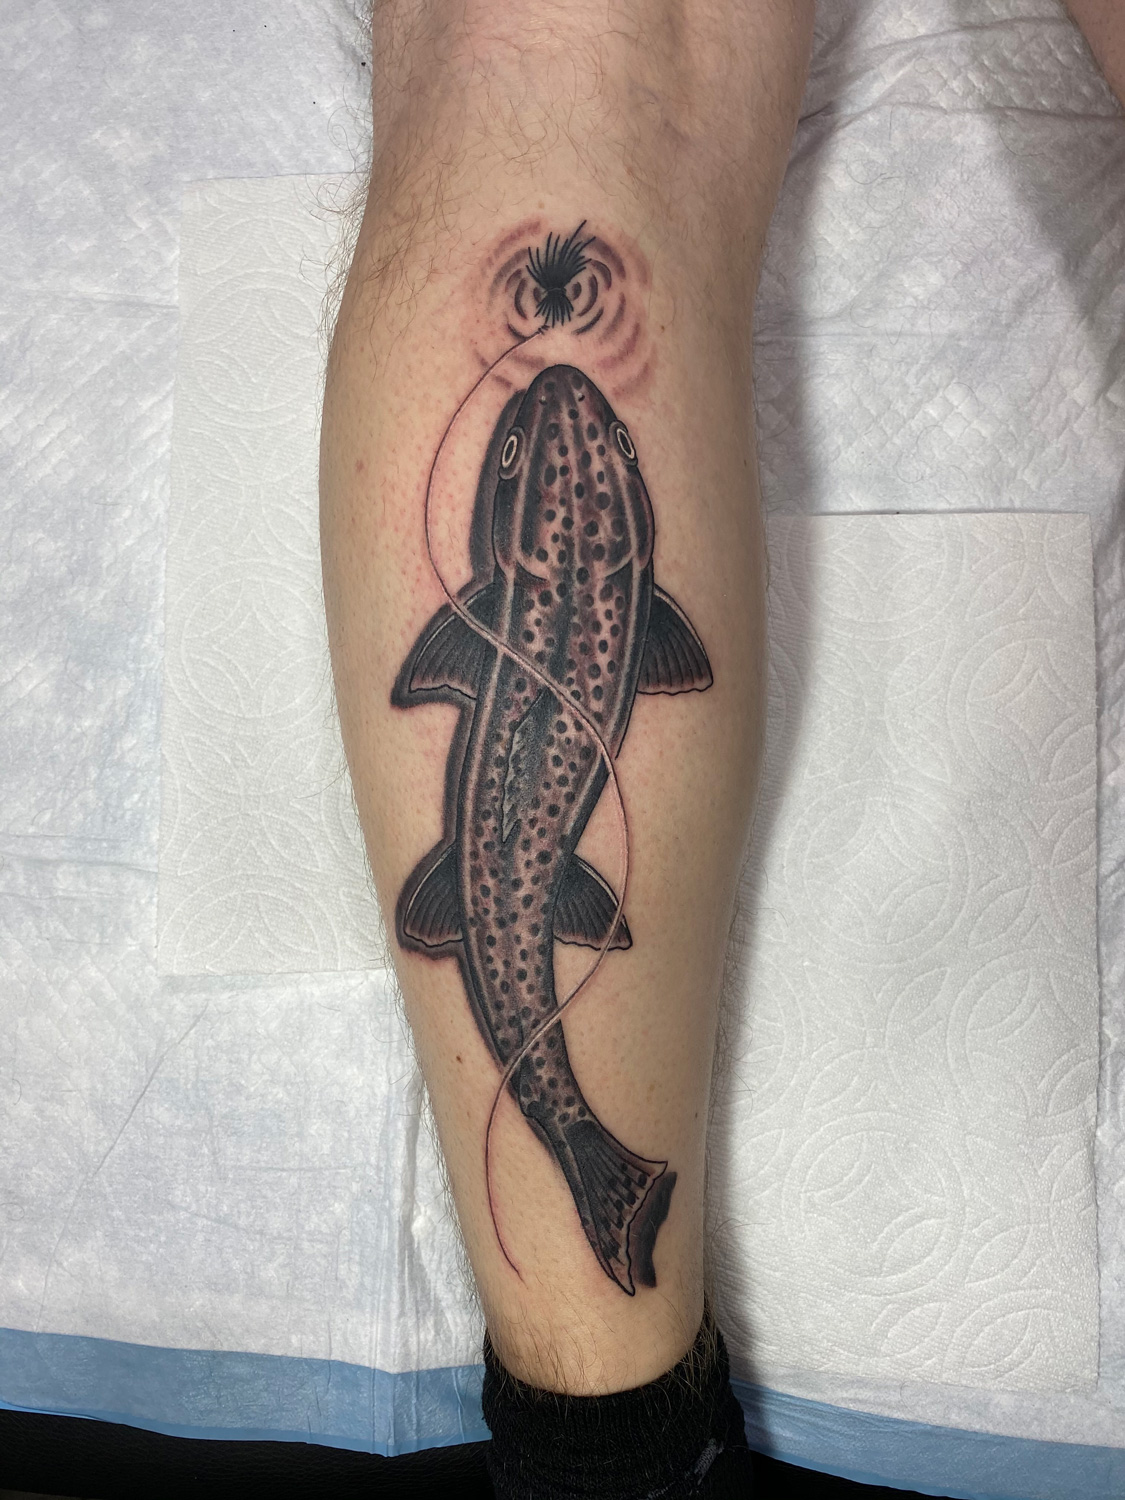 Under Their Skin Fishing Tattoos  Game  Fish